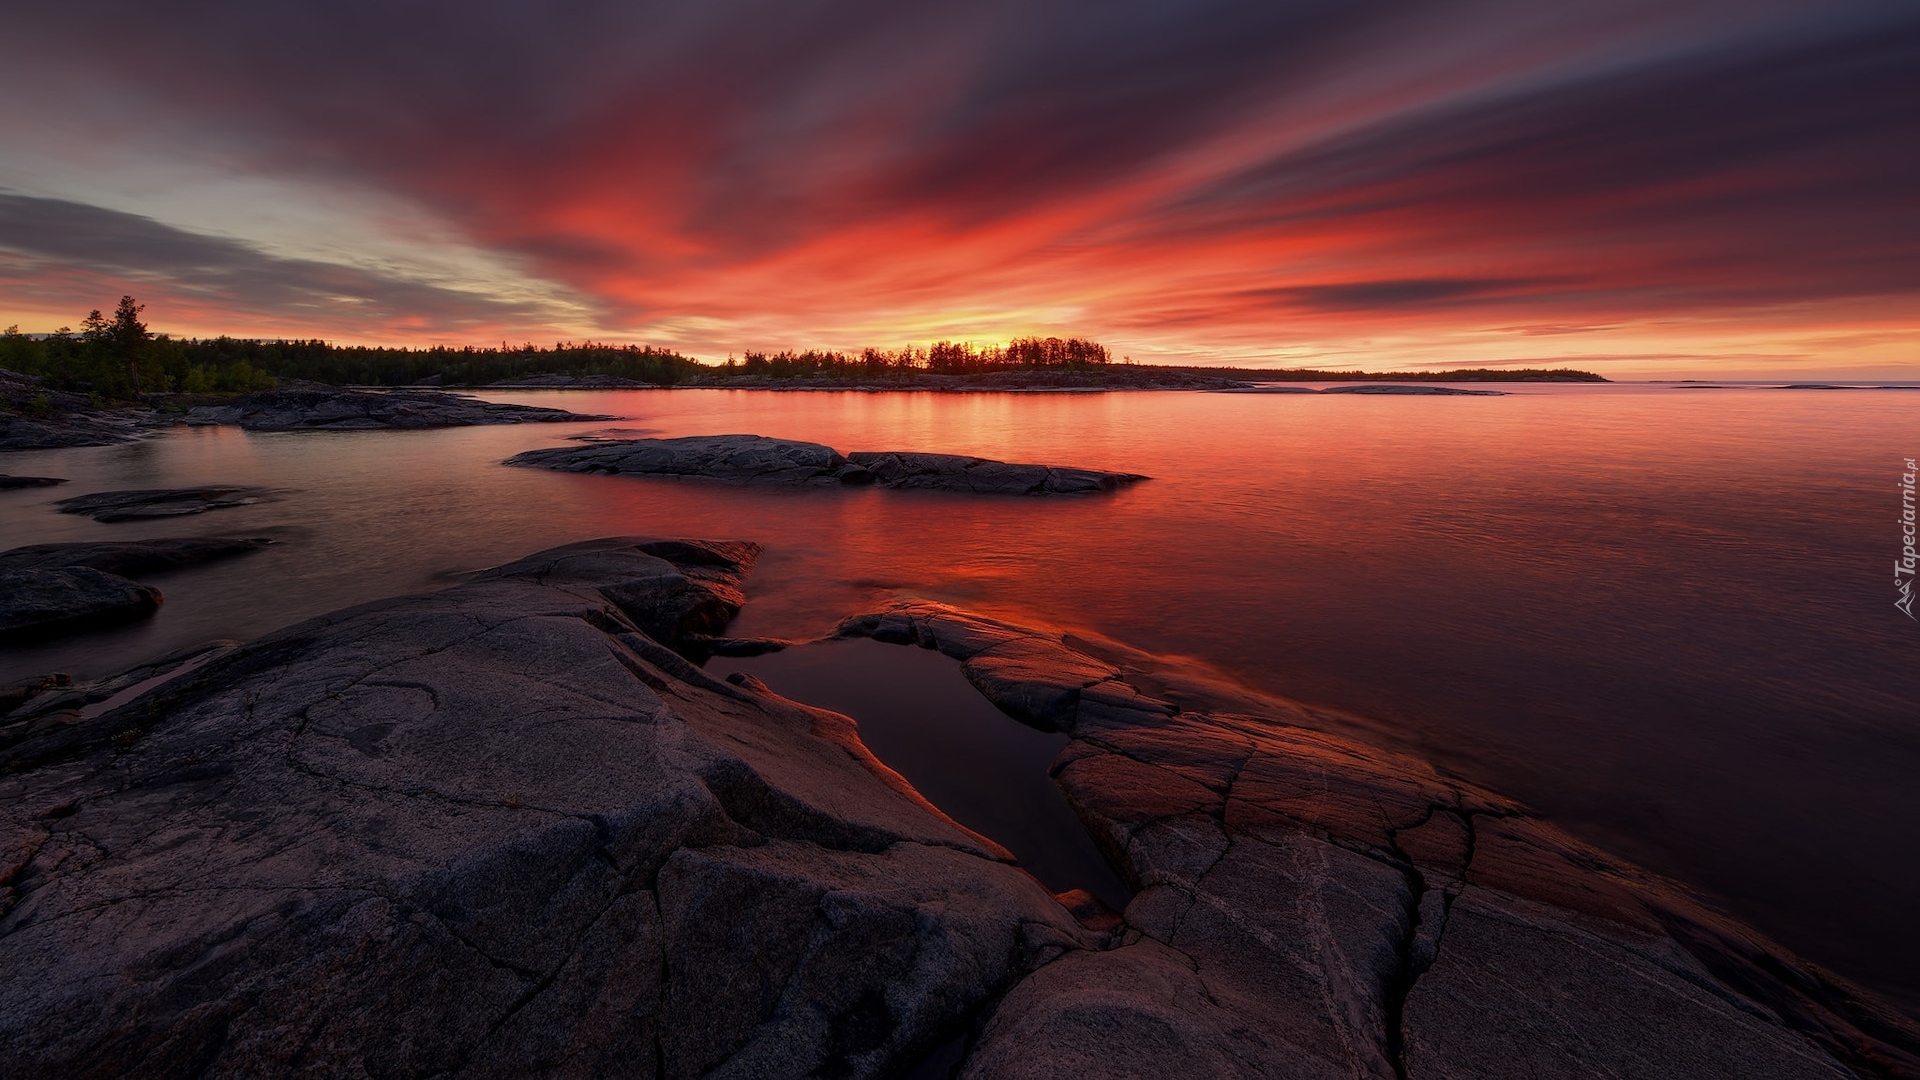 Duże Jezioro W Rosji Krzyżówka Kolorowy zachód słońca nad Jeziorem Ładoga w Rosji